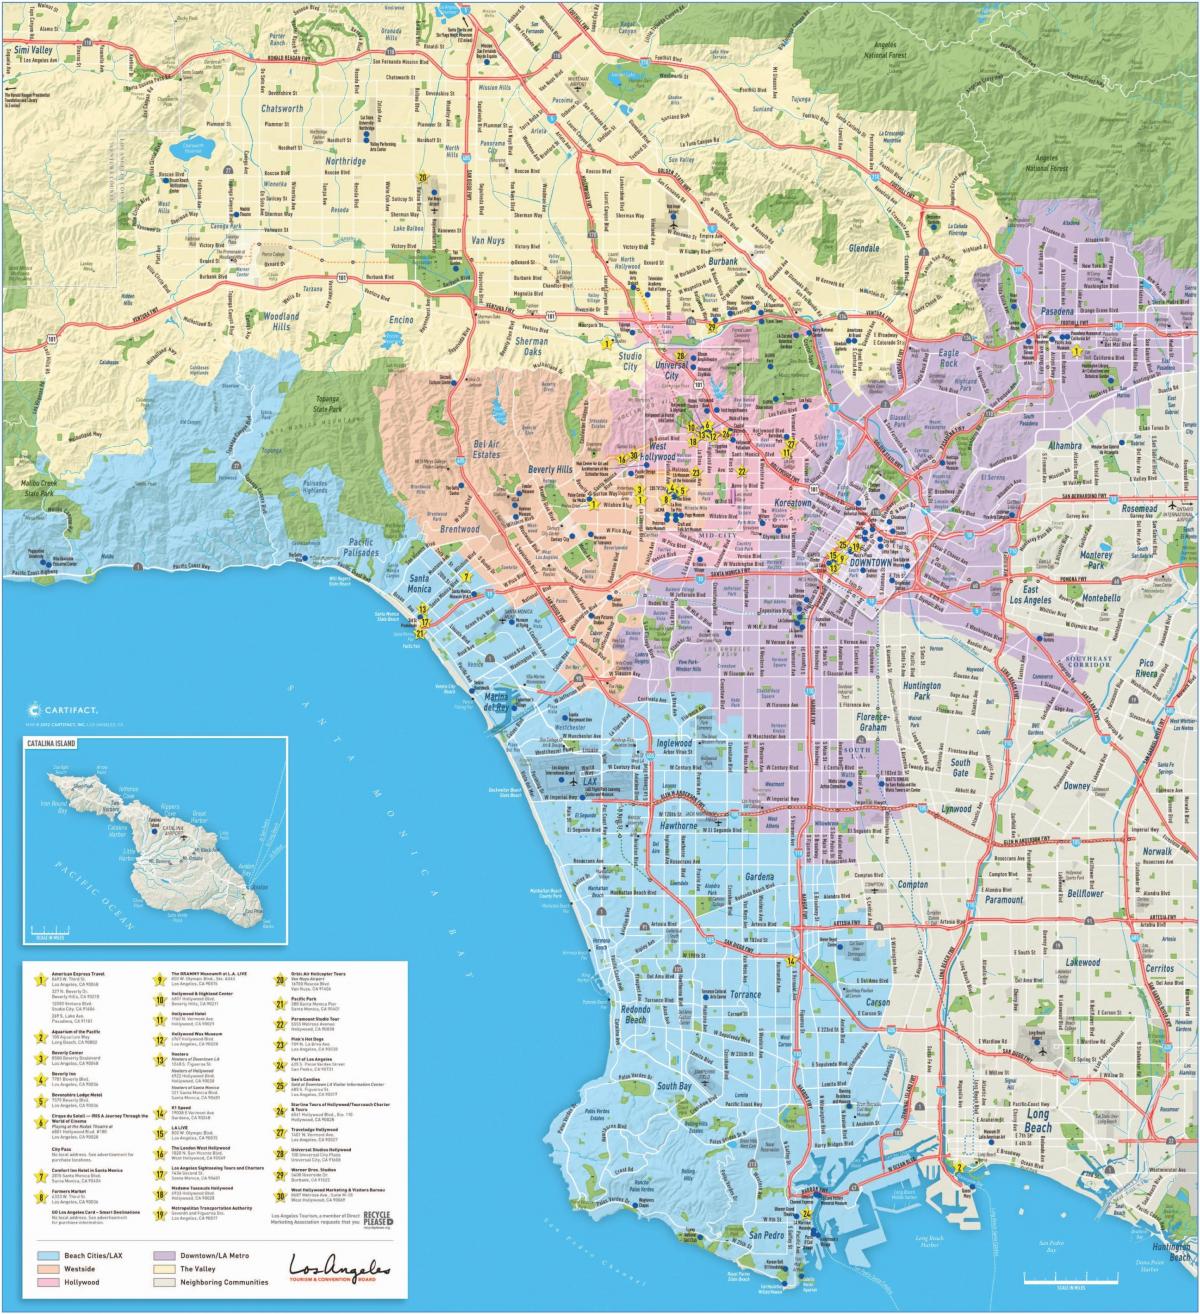 Mapa de los lugares de interés de Los Ángeles